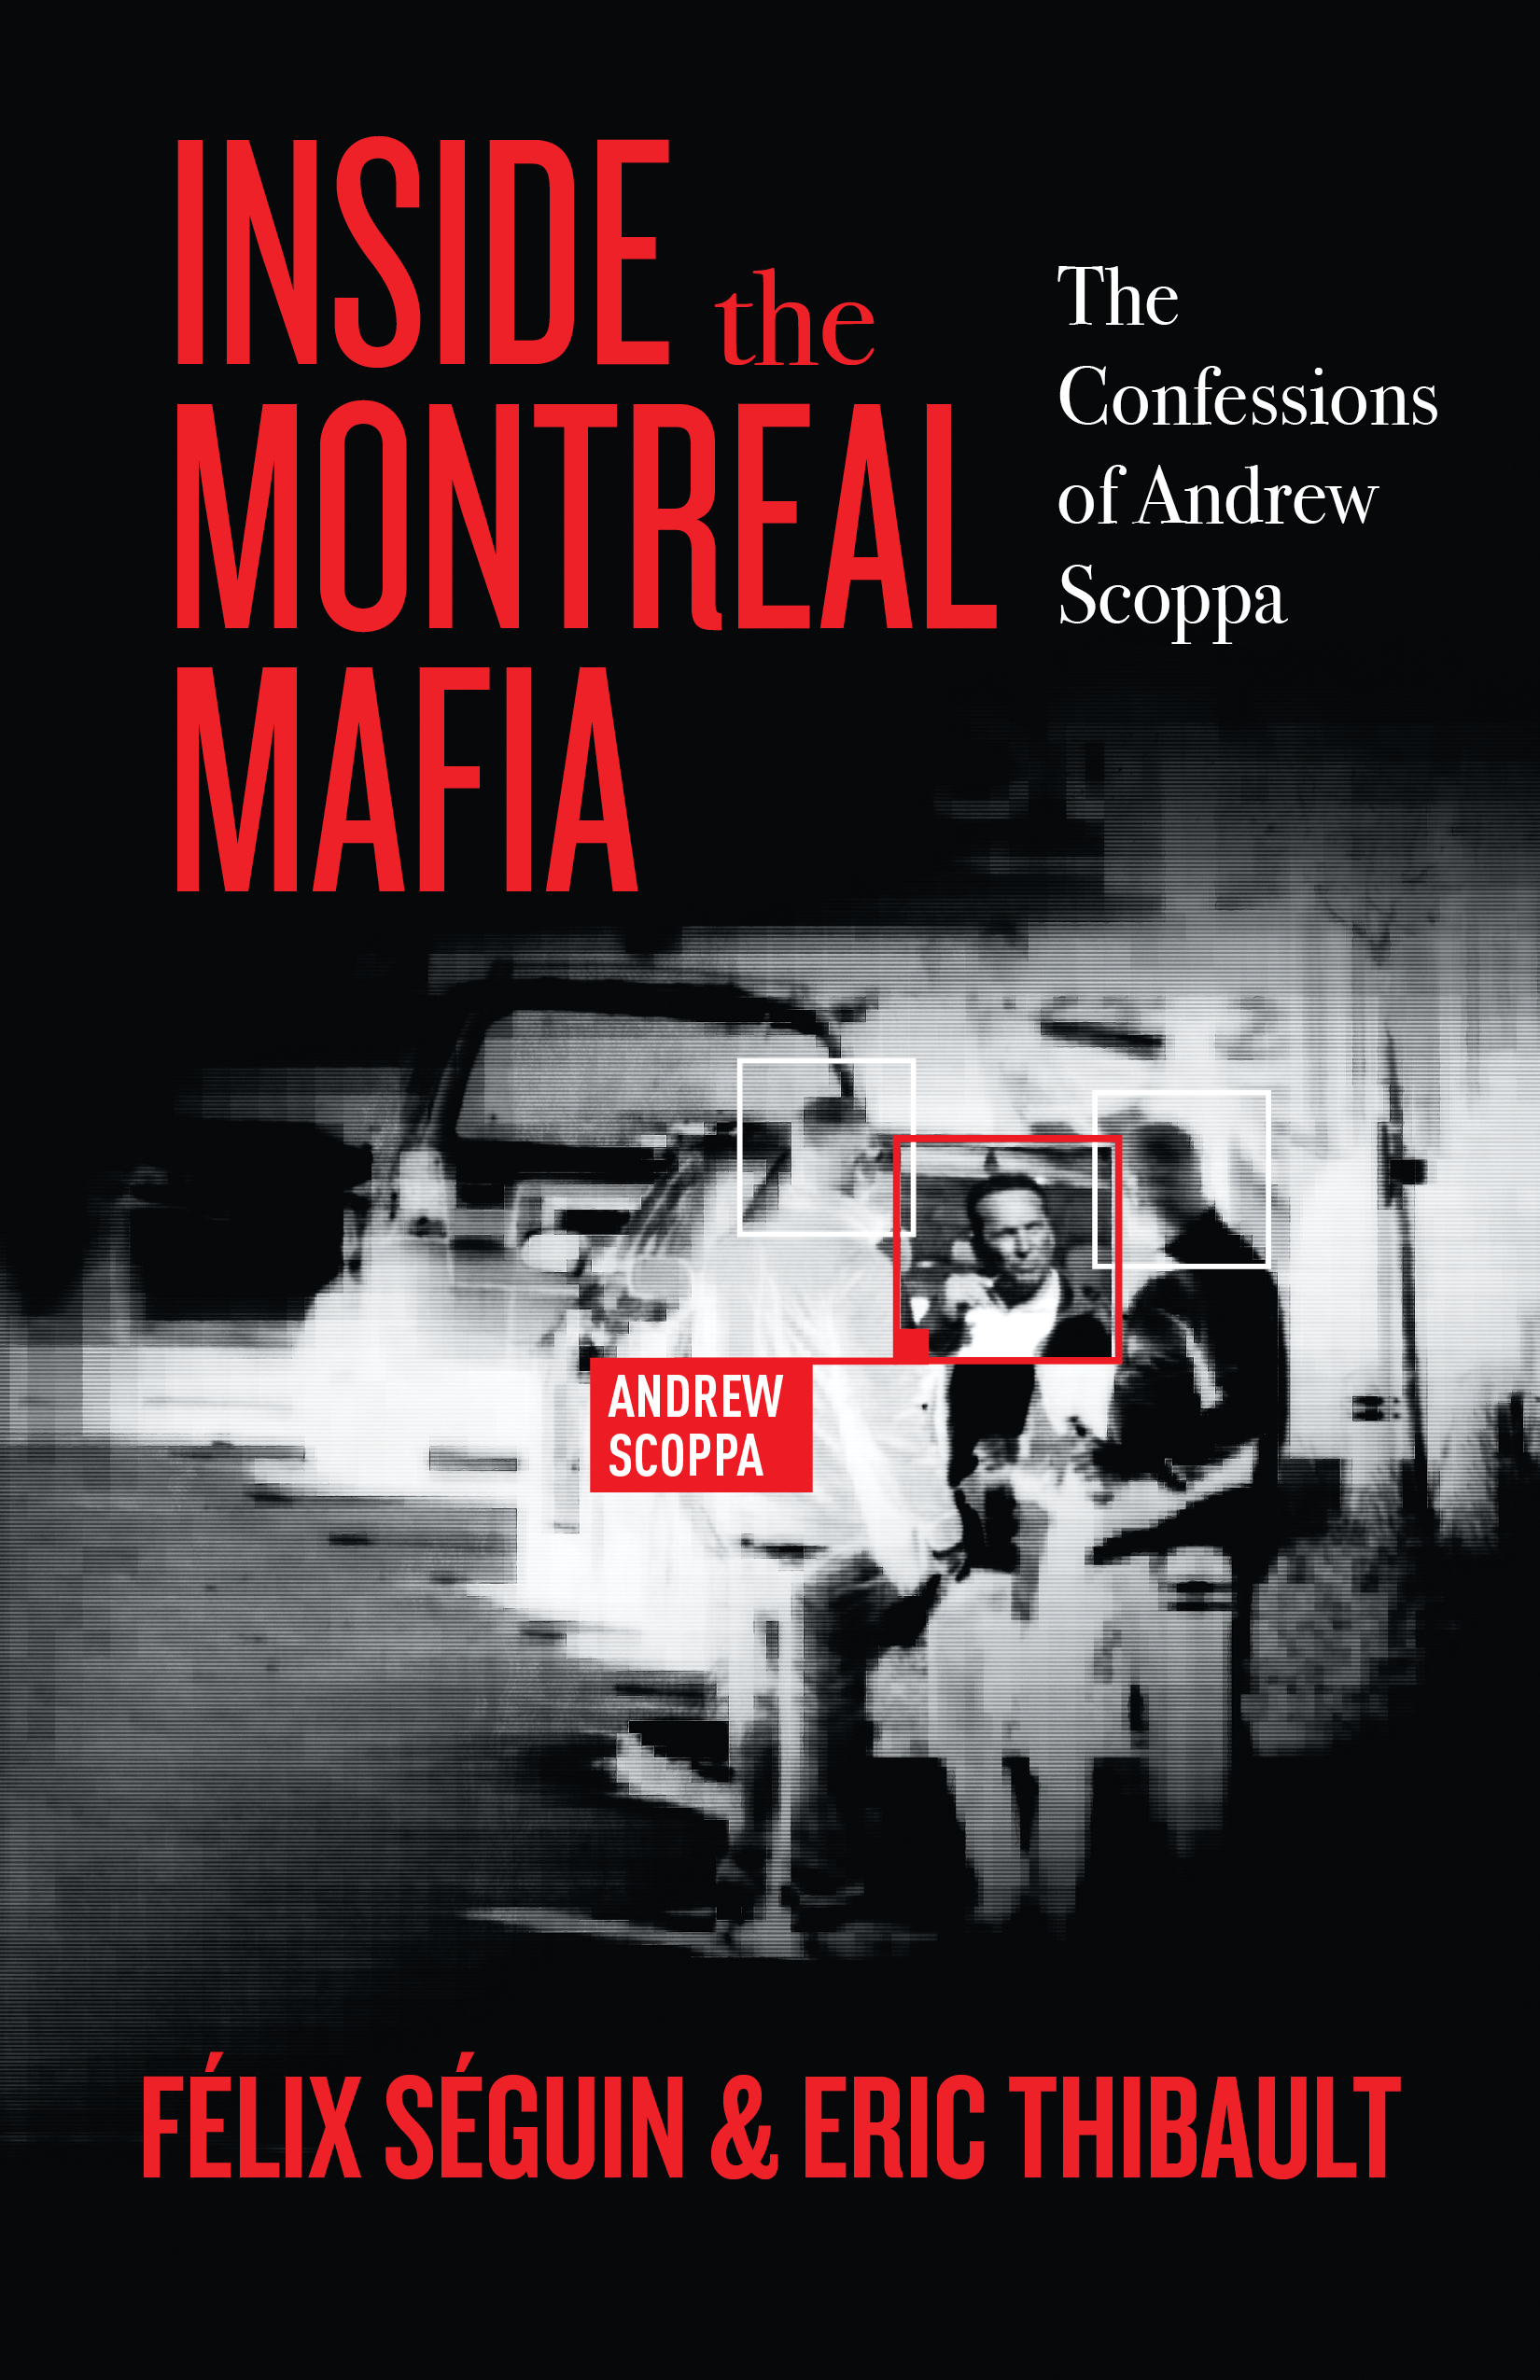 Inside the Montreal Mafia by Eric Thibault & Félix Séguin